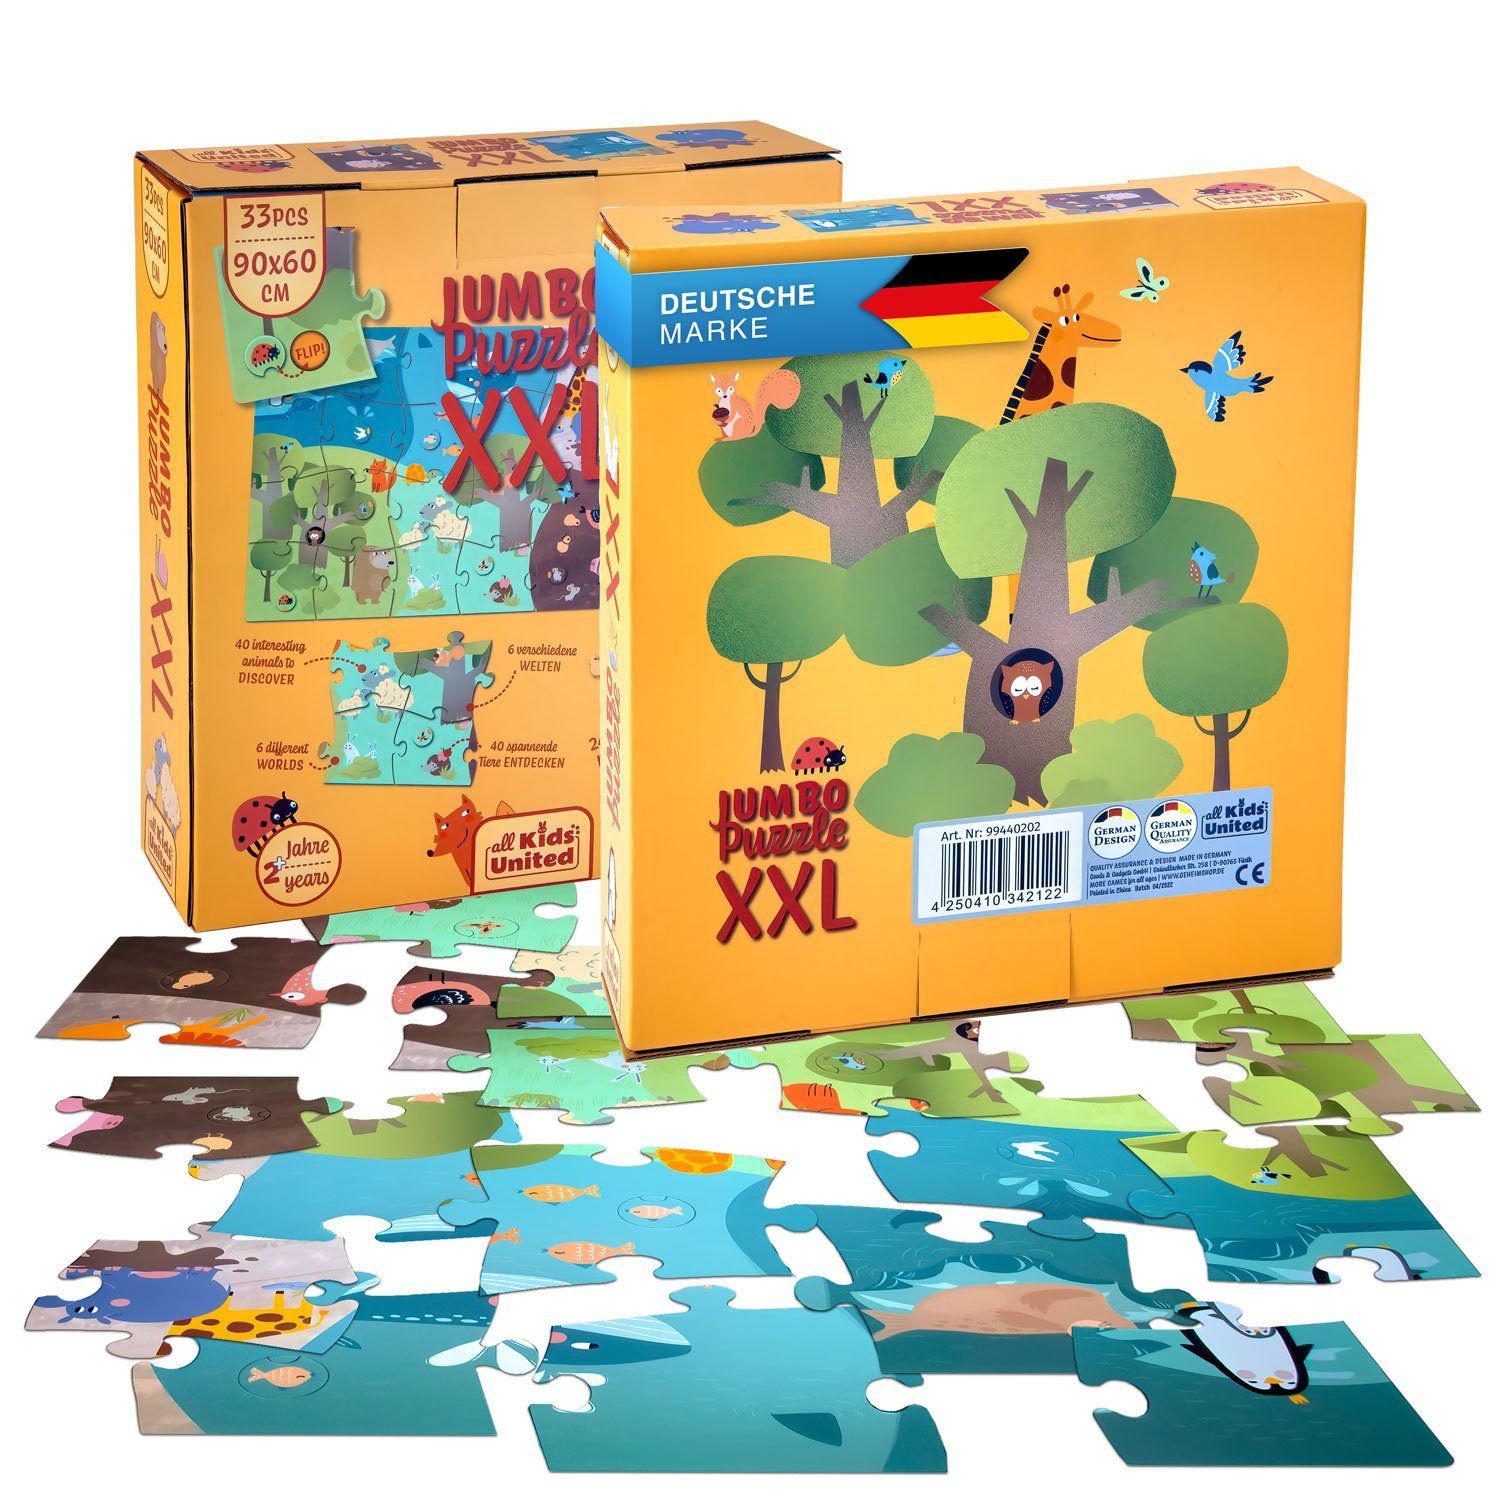 all Kids United Пазлы XXL Tiere Kinder-Spielzeug, 33 Пазлыteile, mit Tieren und Landschaft